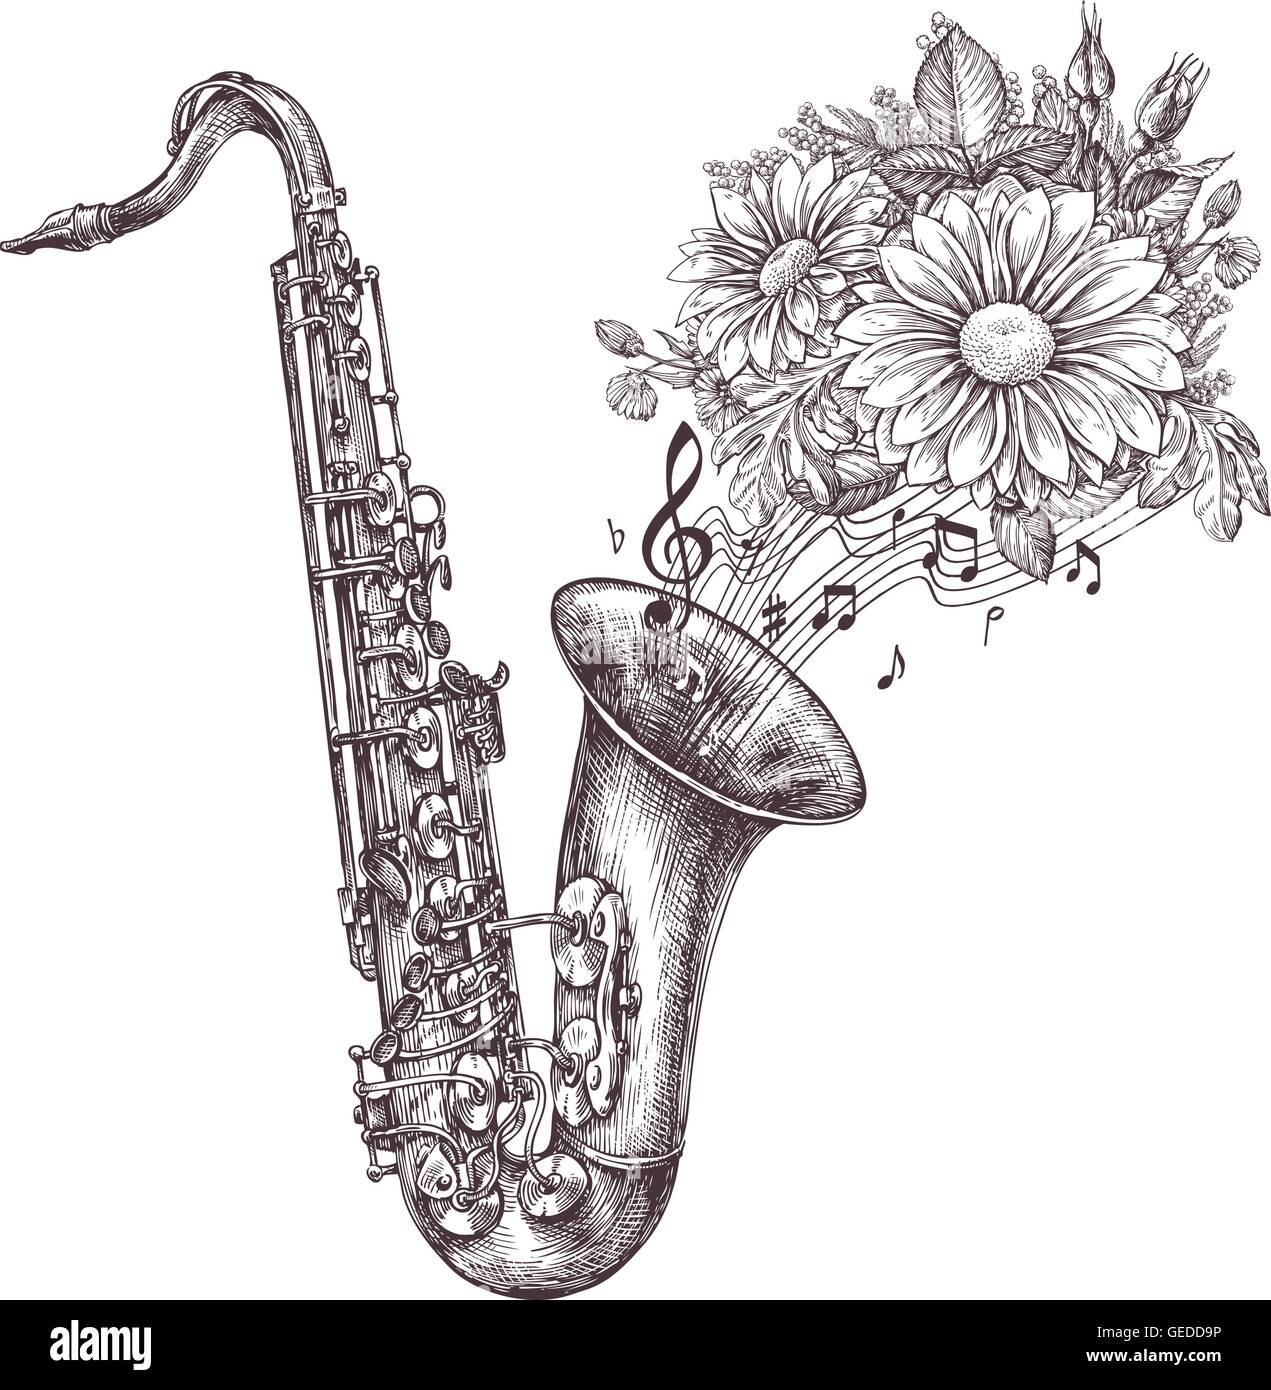 La musica jazz. Mano-bozzetto un sassofono, sax e fiori. Illustrazione Vettoriale Illustrazione Vettoriale